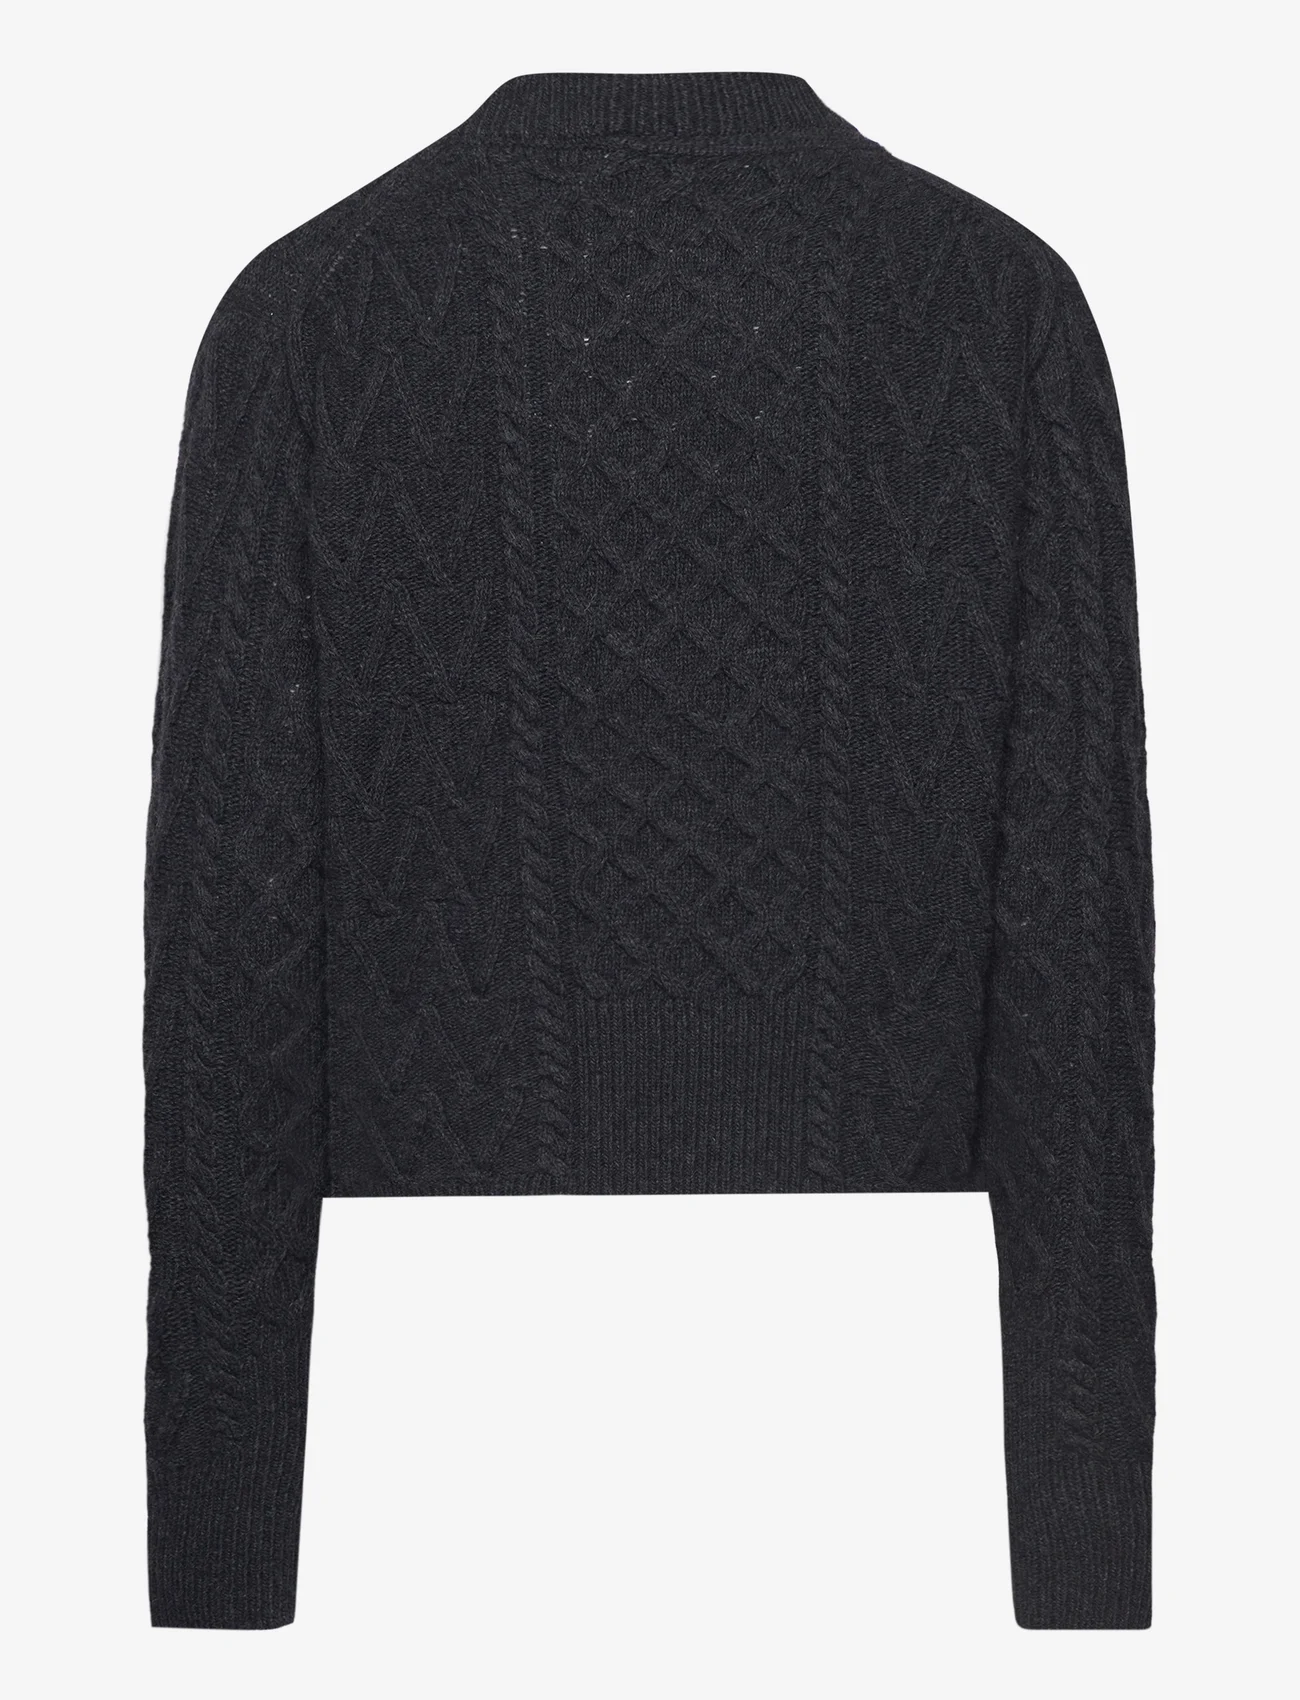 Wood Wood - Tania Aran knit jumper - pullover - dark grey - 1